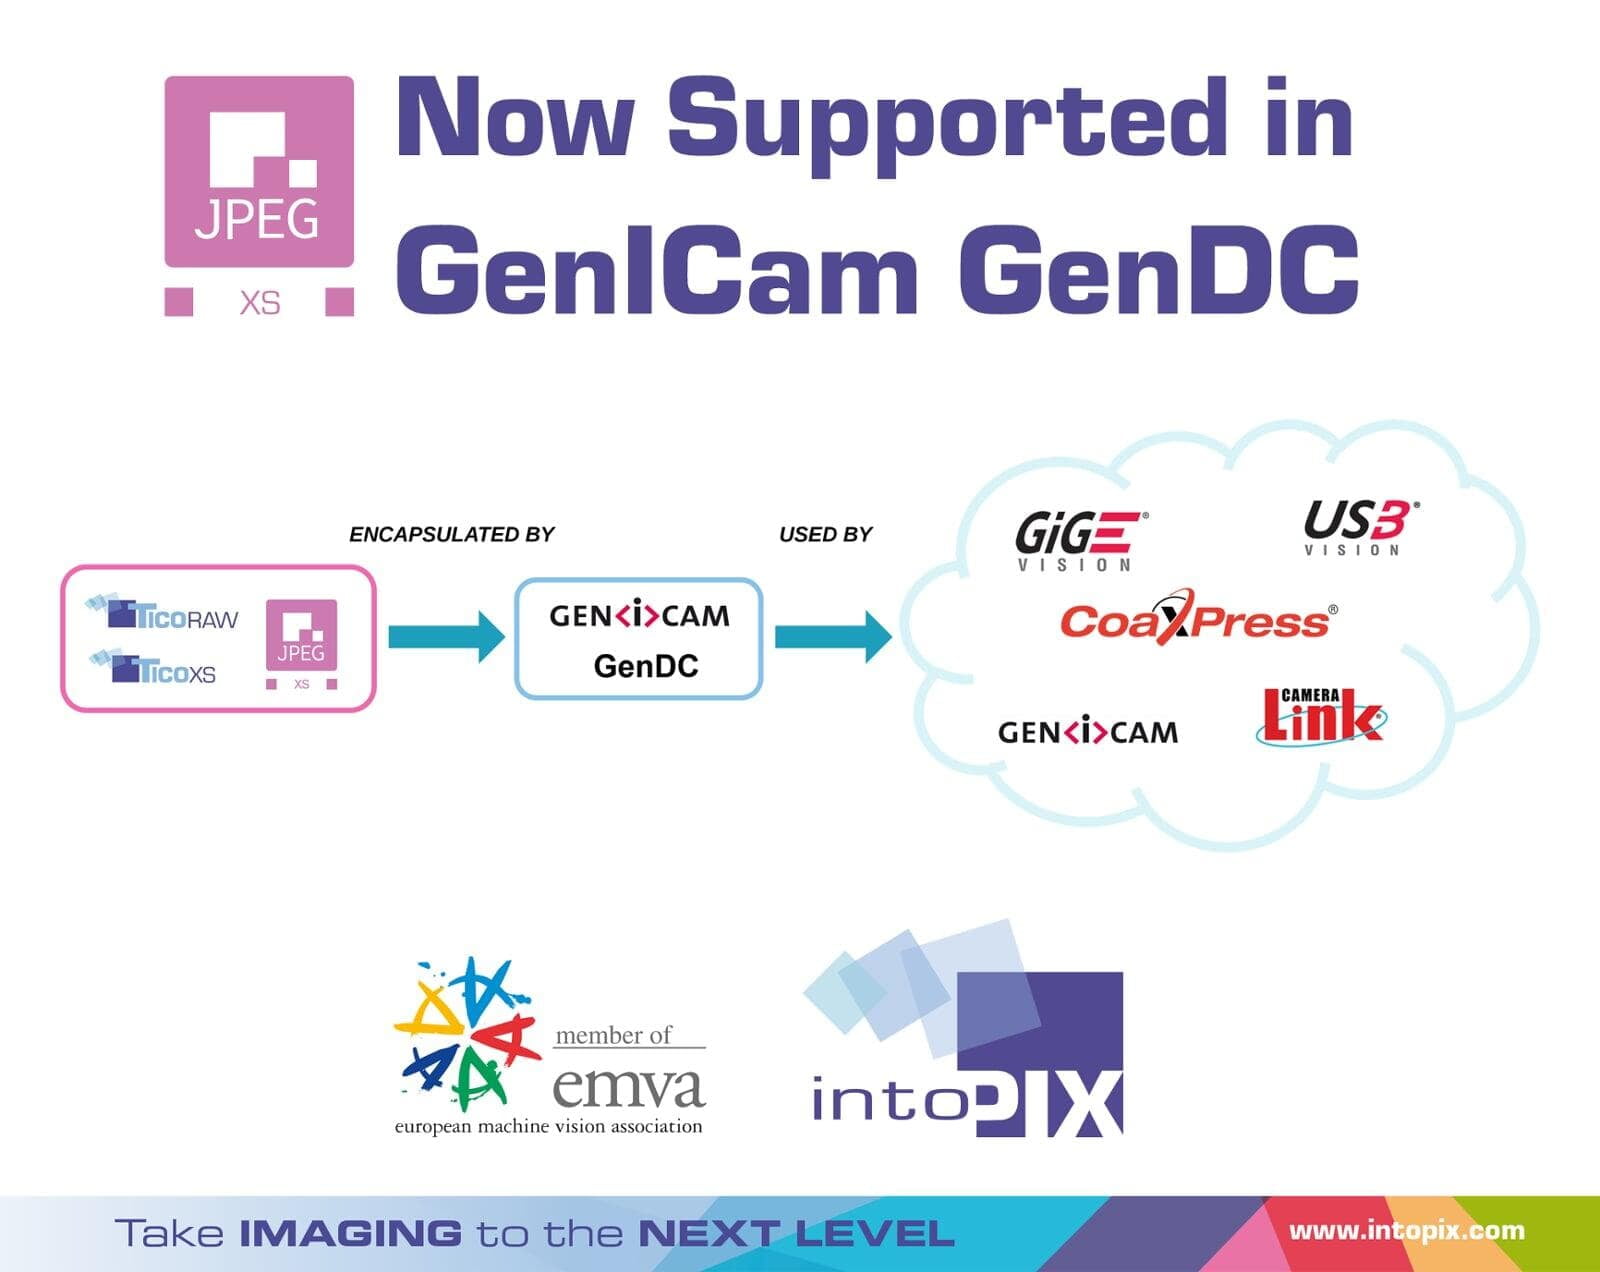 JPEG XS rejoint GenICam, une norme de vision industrielle gérée par l'EMVA